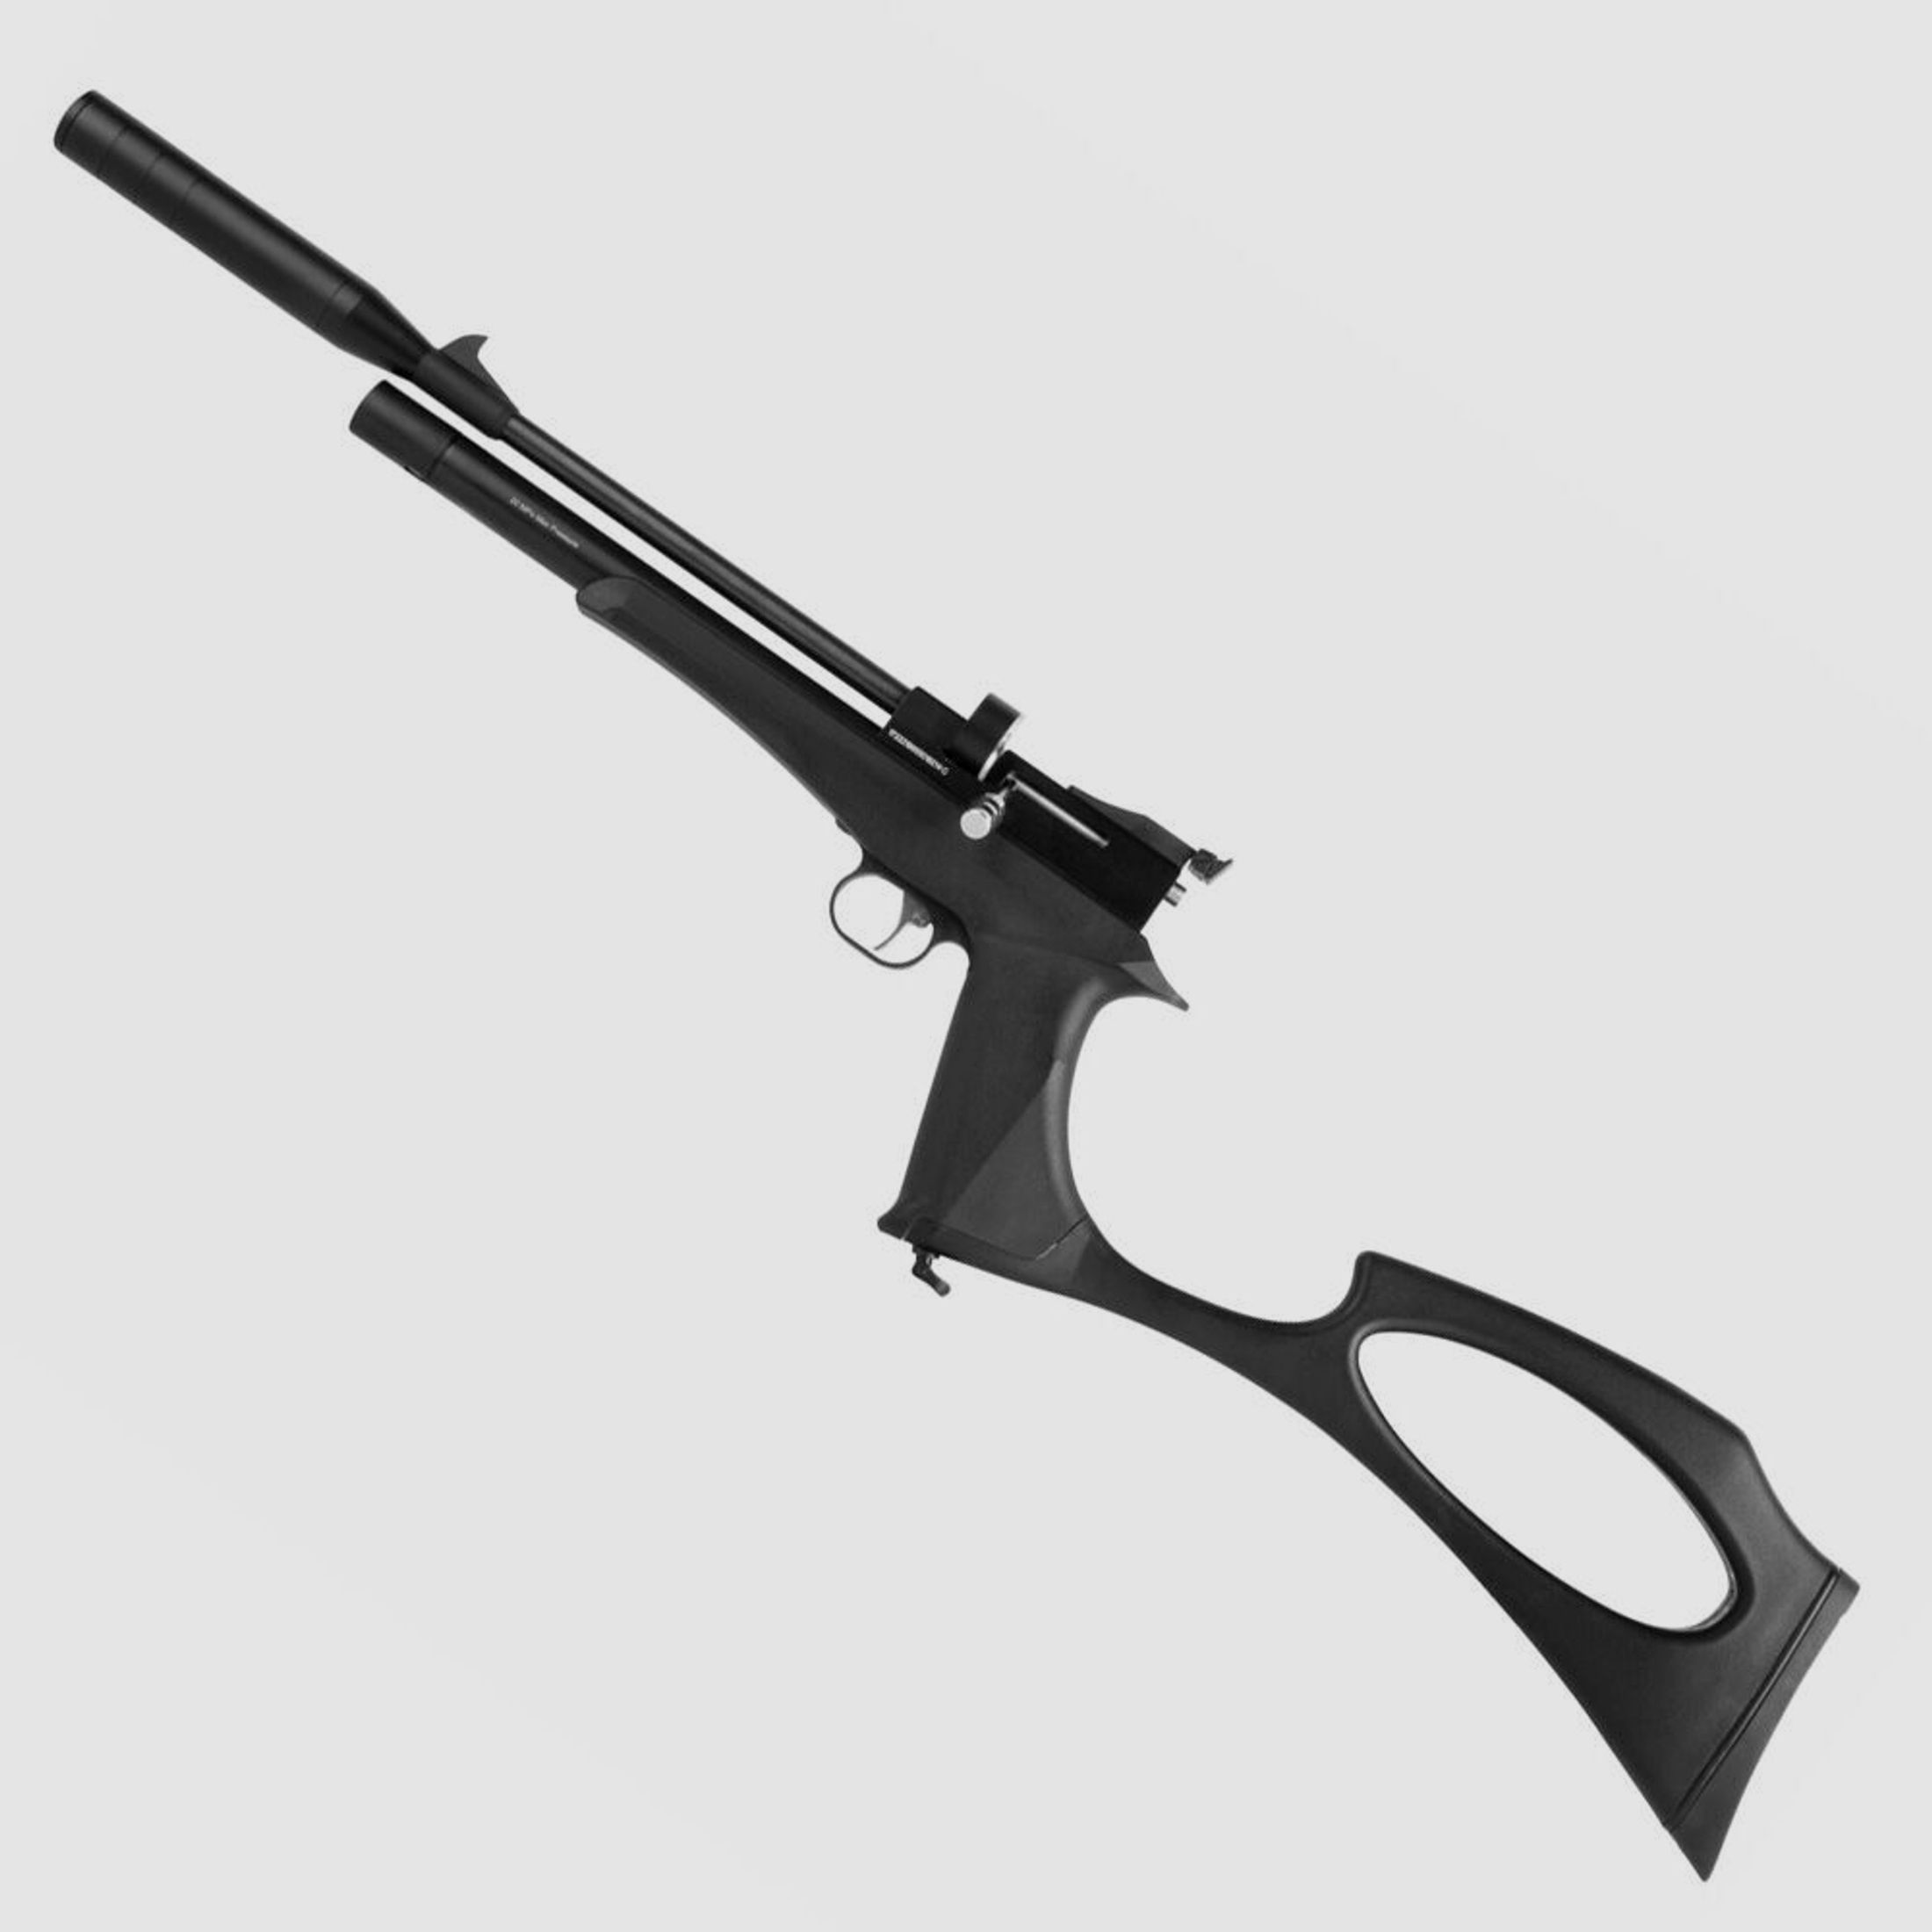 Diana Bandit Black Pressluftpistole 4,5 mm Diabolo mit Schafterweiterung